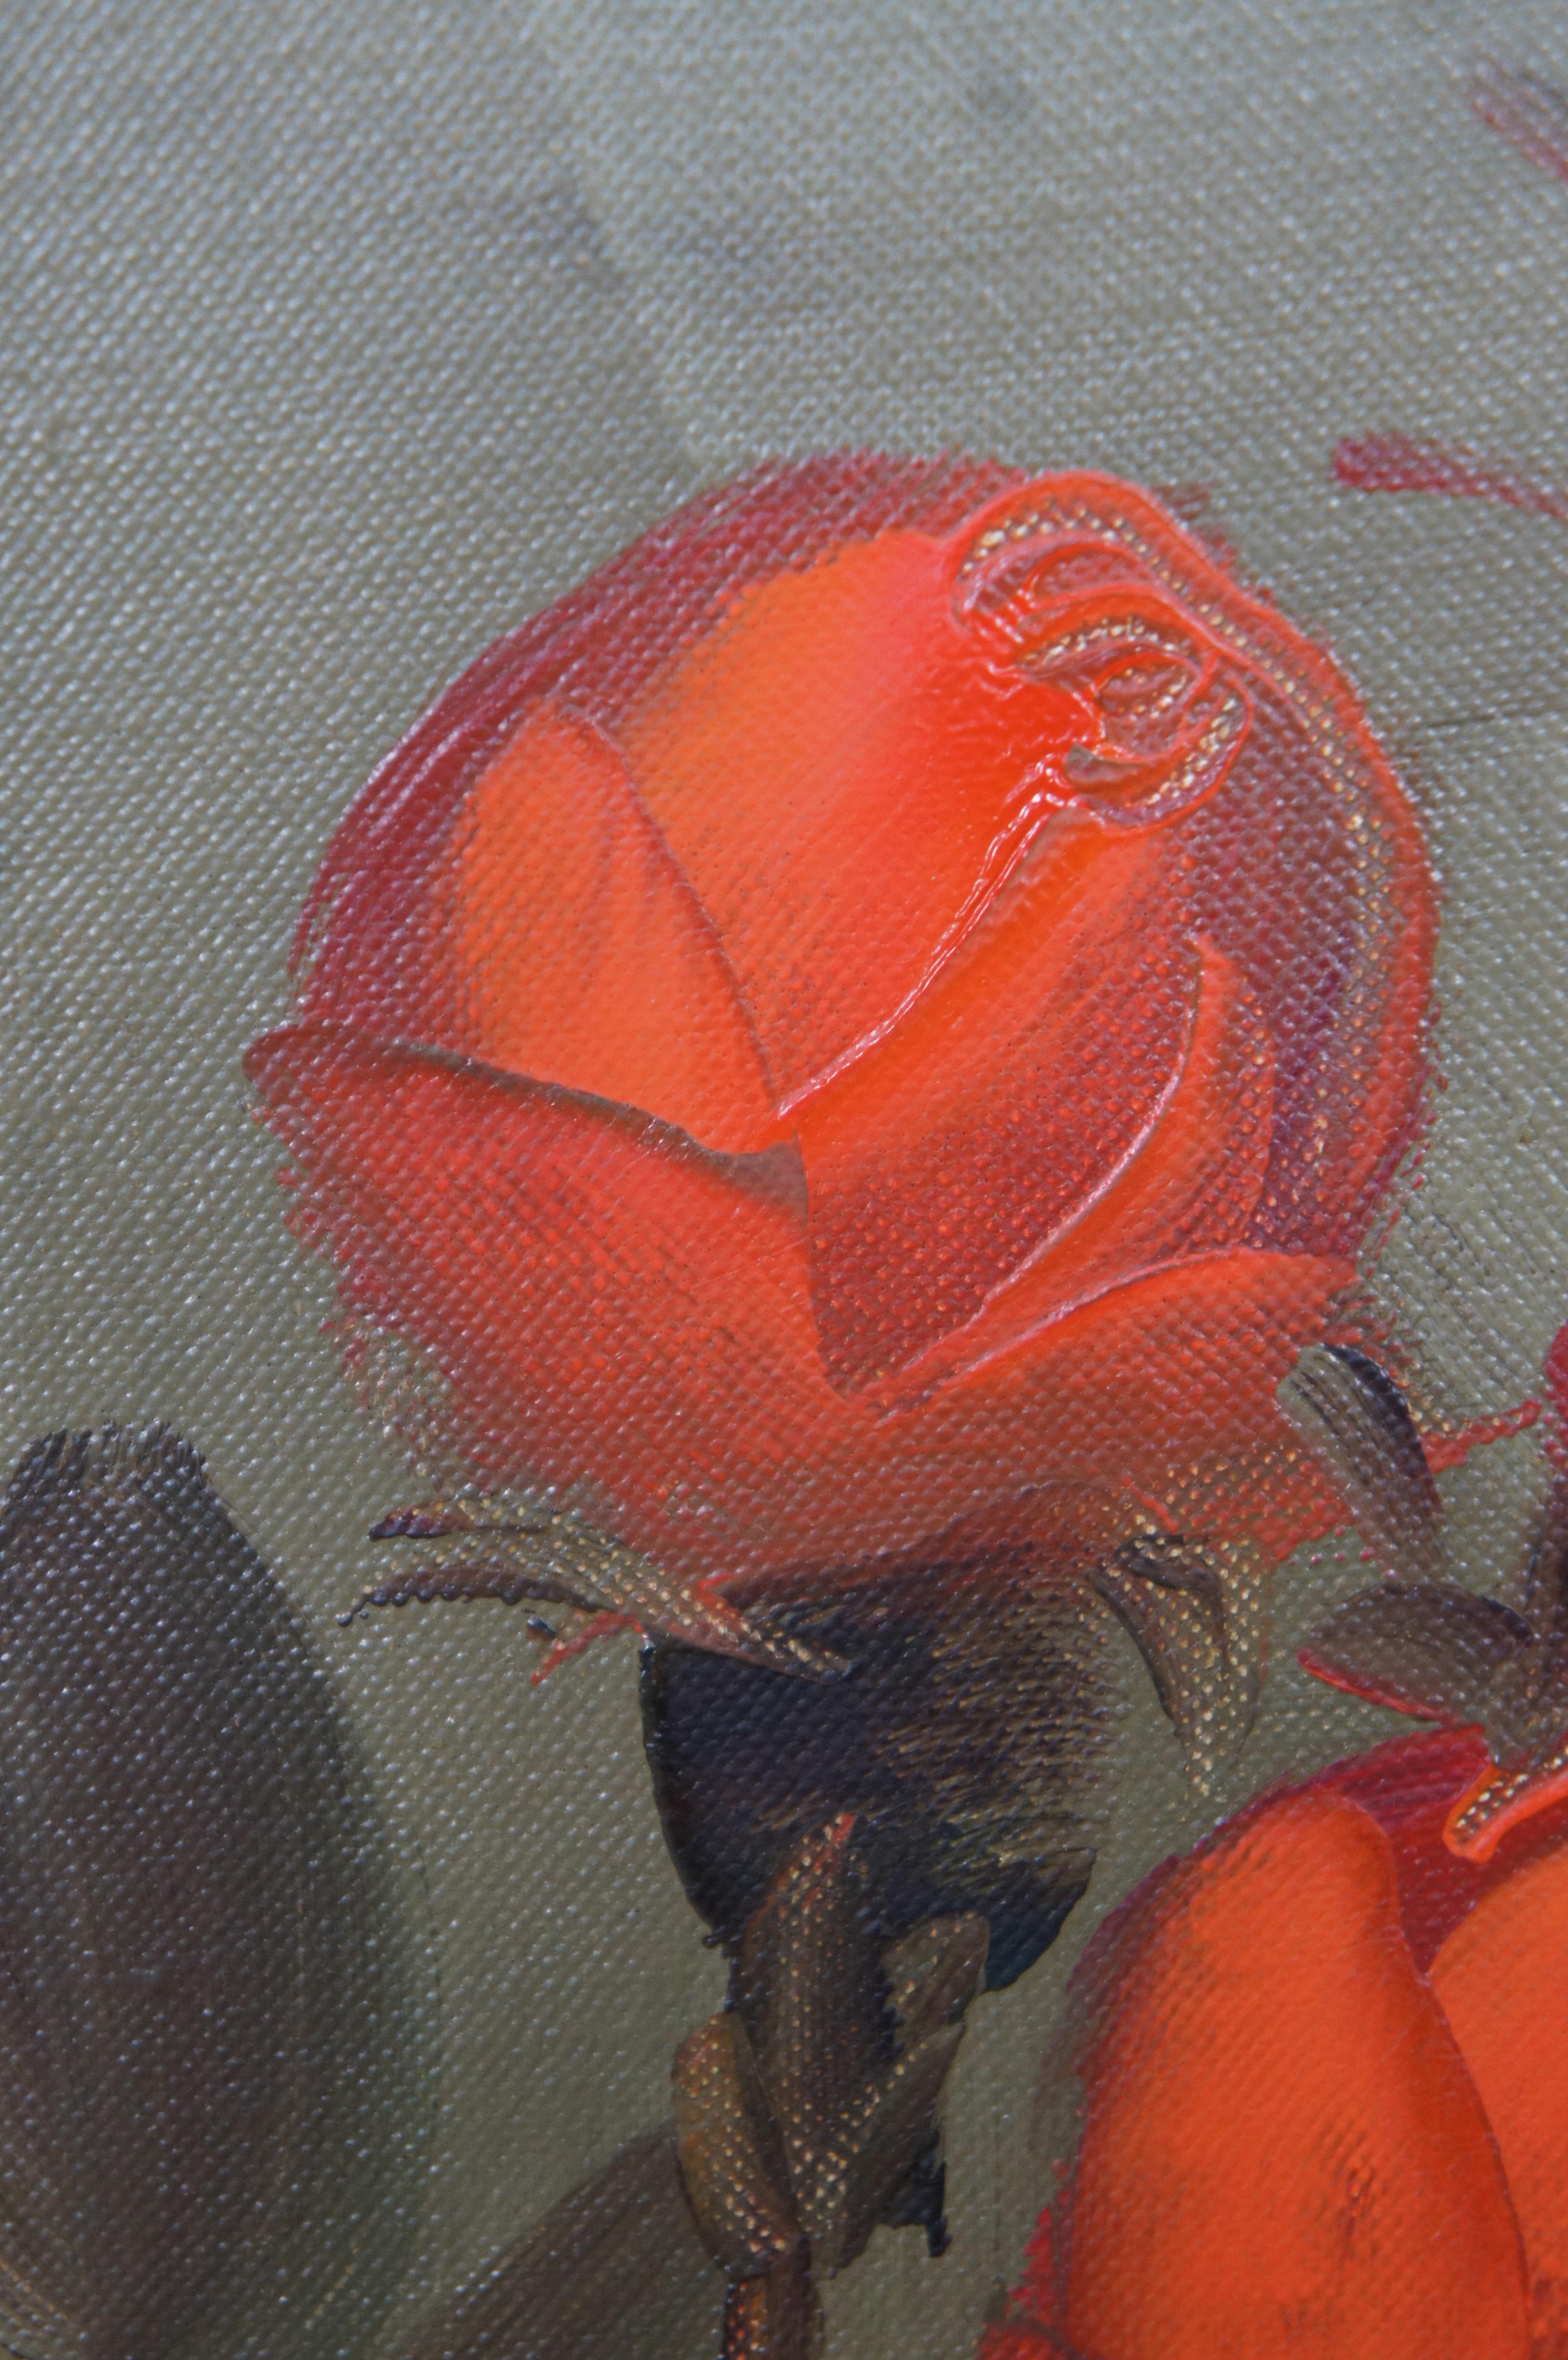 Suzanne Blumenstillleben, Ölgemälde auf Leinwand, orangefarbener Rosenstrauß, 44